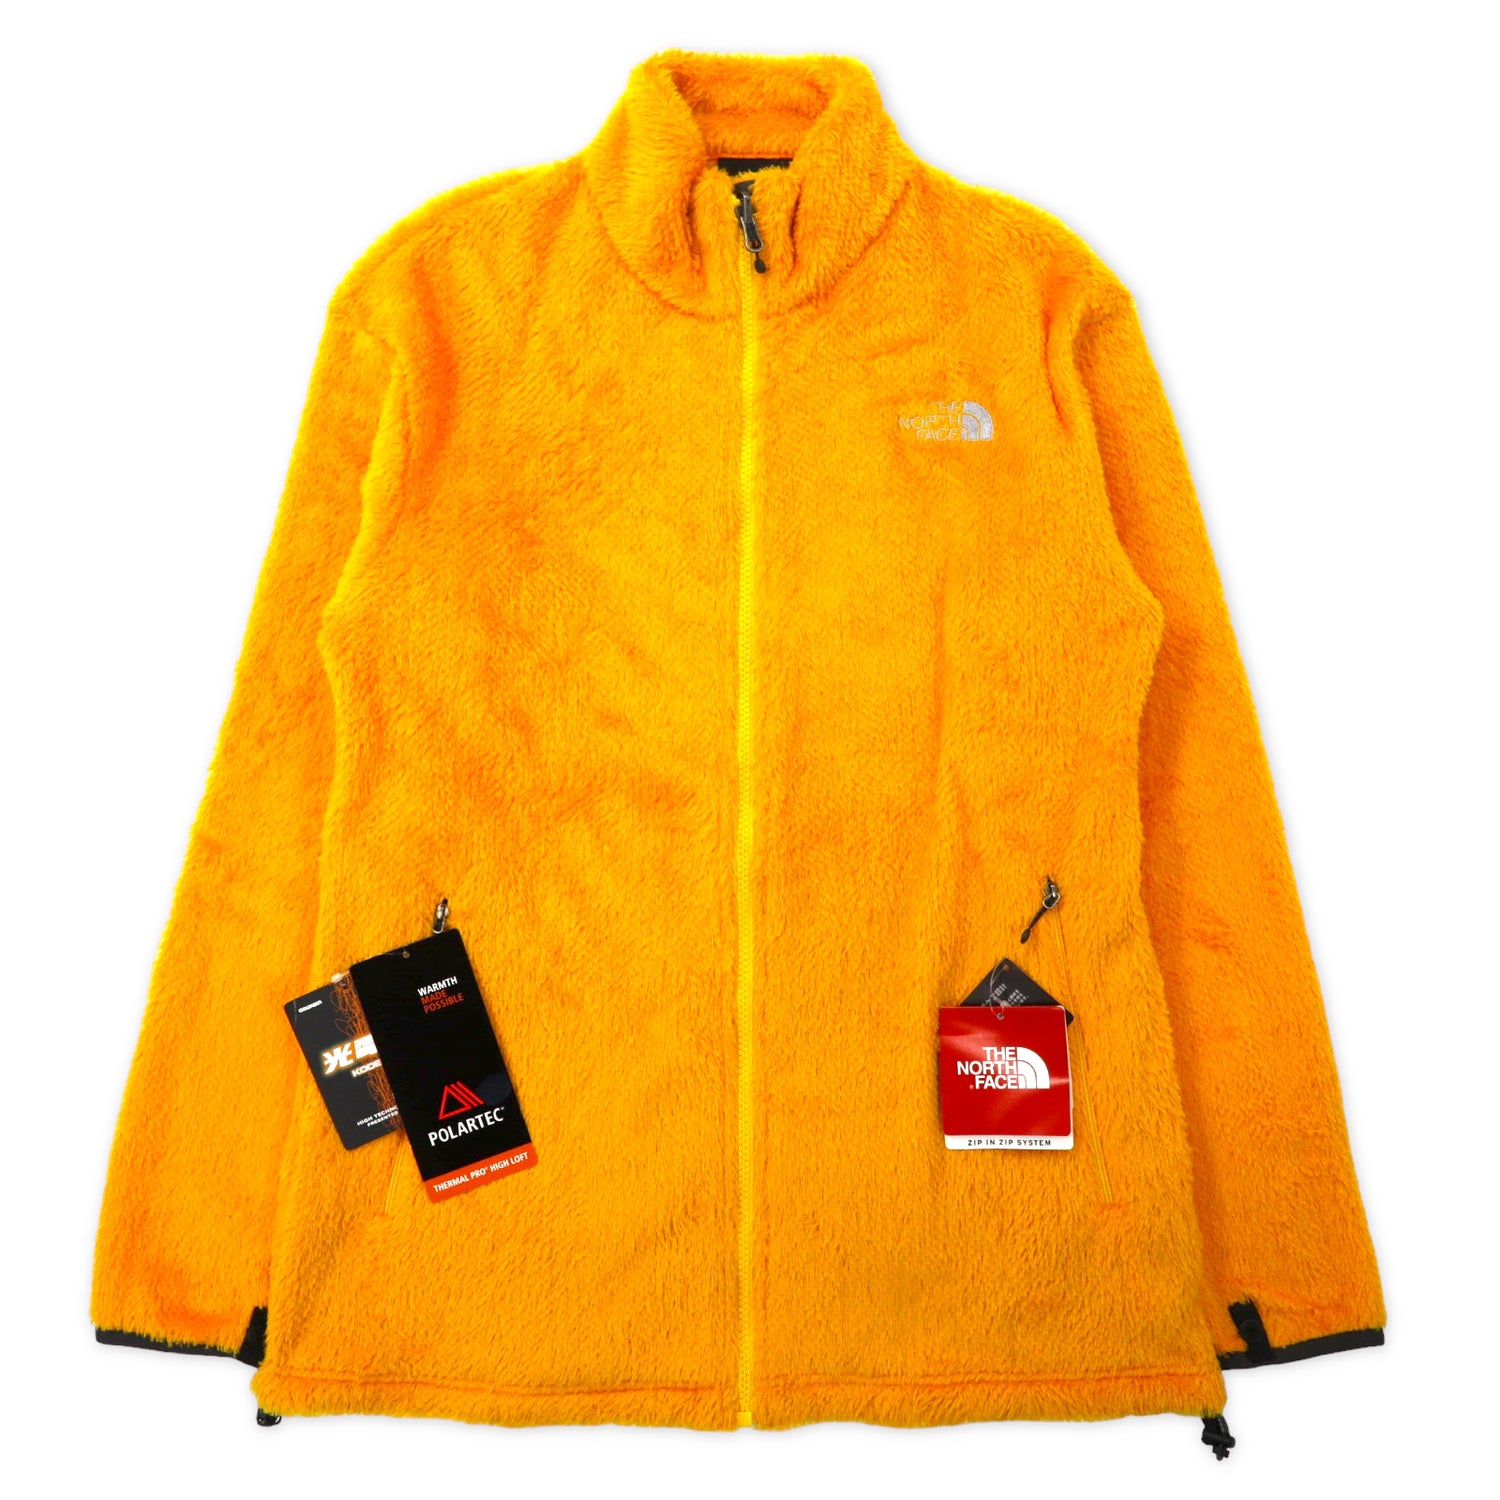 THE NORTH FLEECE Jacket Versa Aerprain Jacket L Yellow Polartec